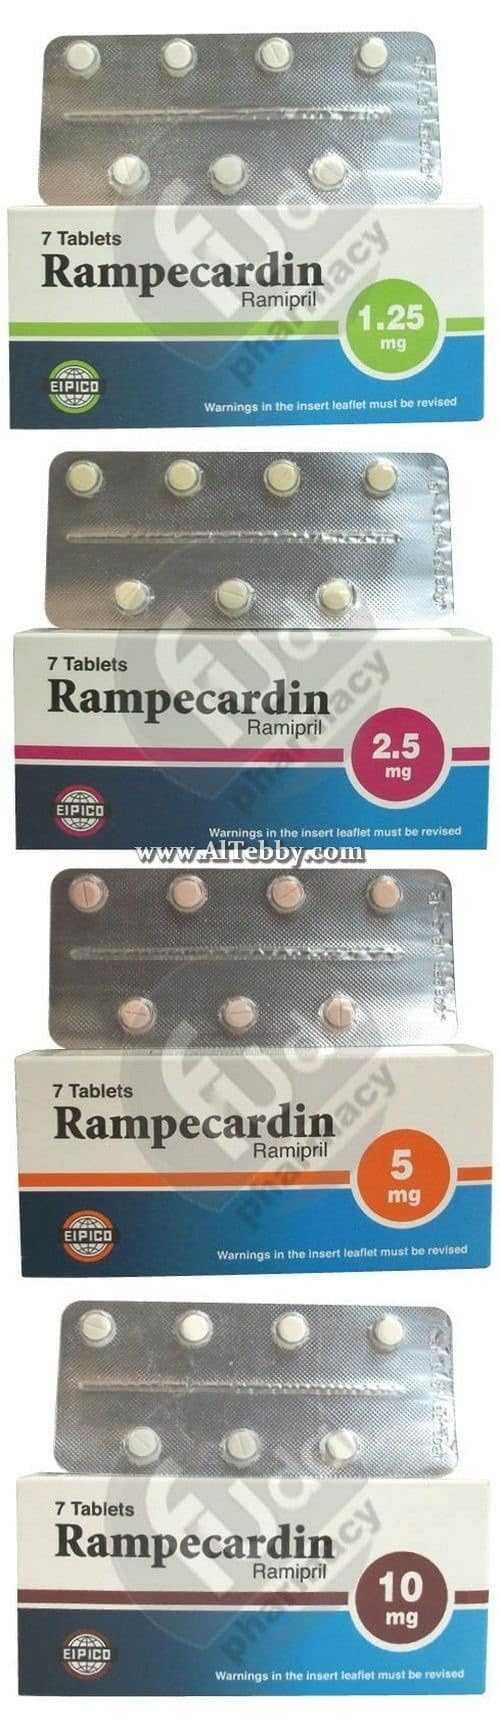 رامبيكاردين Rampecardin دواء drug